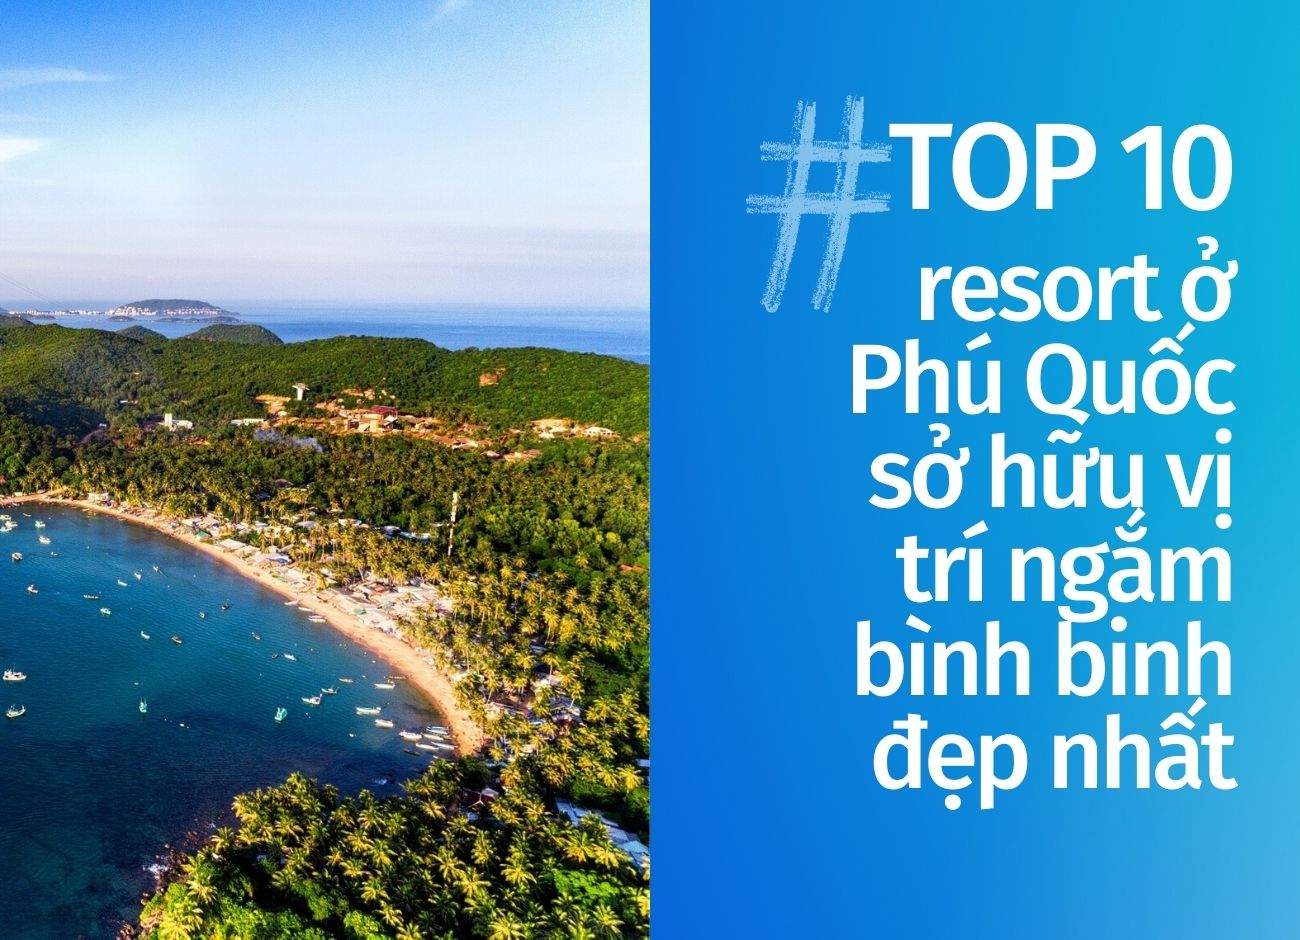 Top 10 resort Phú Quốc sở hữu vị trí ngắm bình binh đẹp nhất cập nhật tháng 10 năm 2022